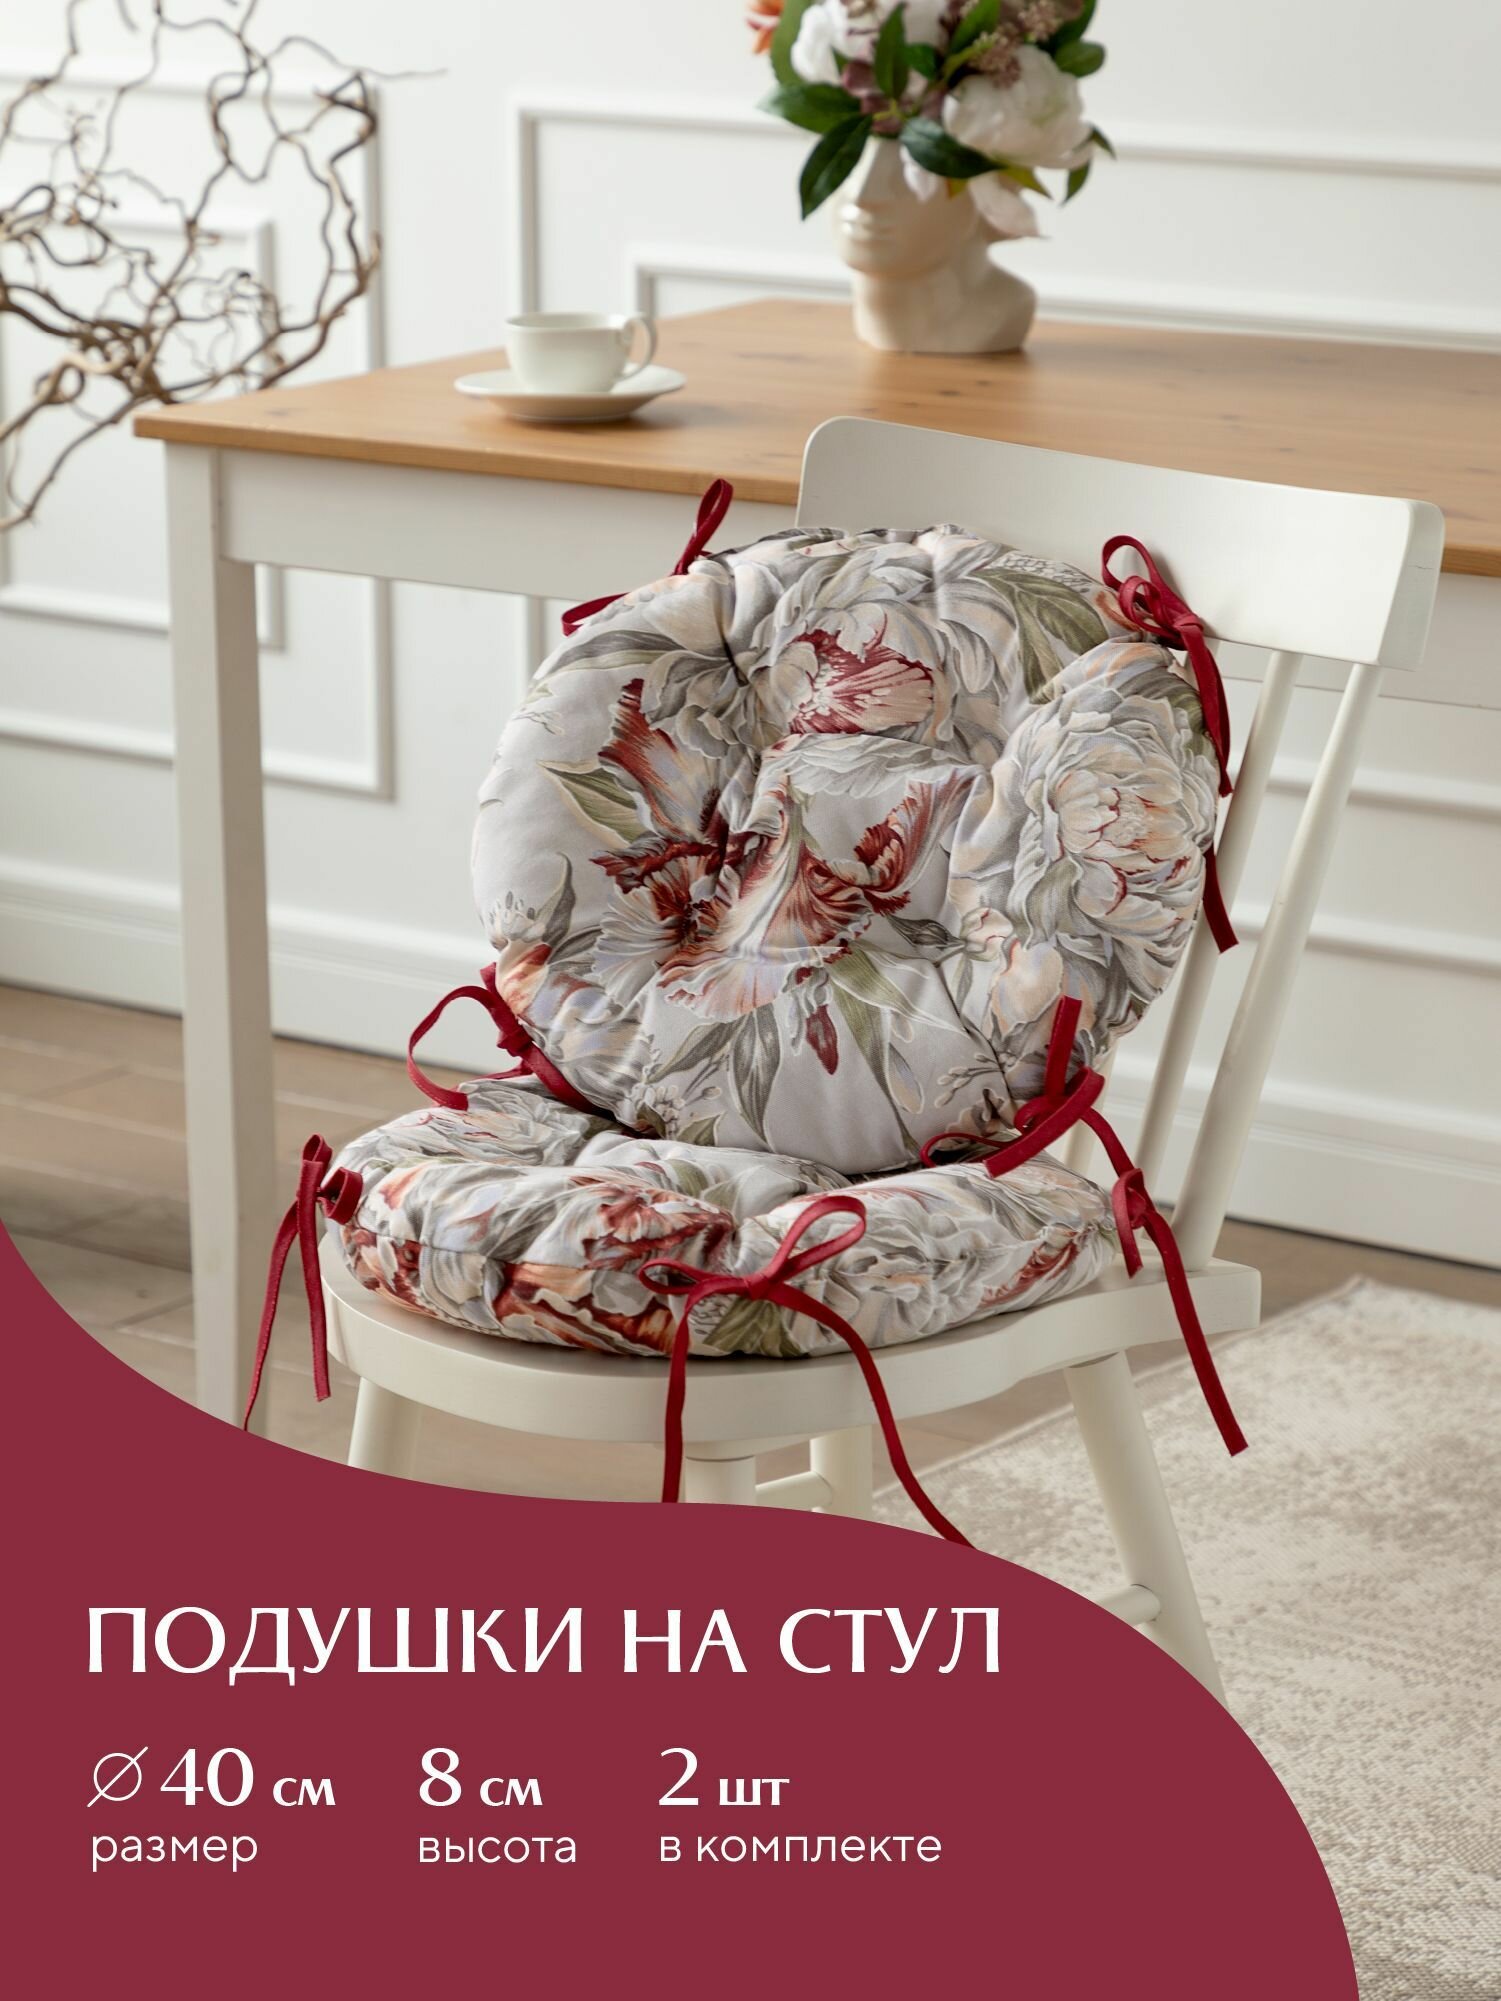 Комплект подушек на стул с тафтингом круглых d40 (2 шт) "Mia Cara" рис 30200-1 Душистый пион